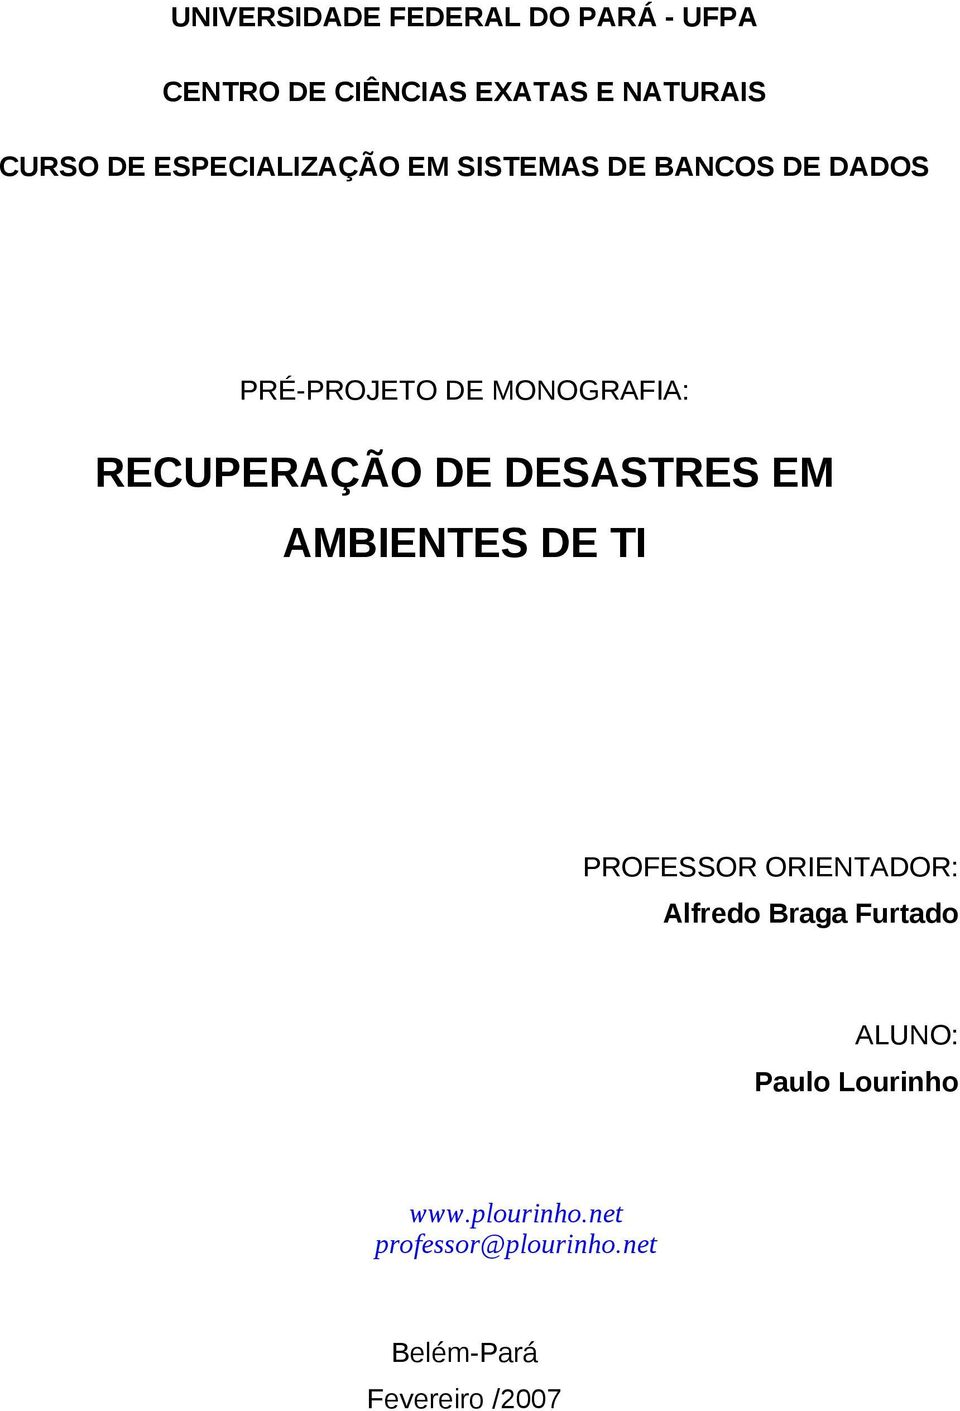 RECUPERAÇÃO DE DESASTRES EM AMBIENTES DE TI PROFESSOR ORIENTADOR: Alfredo Braga